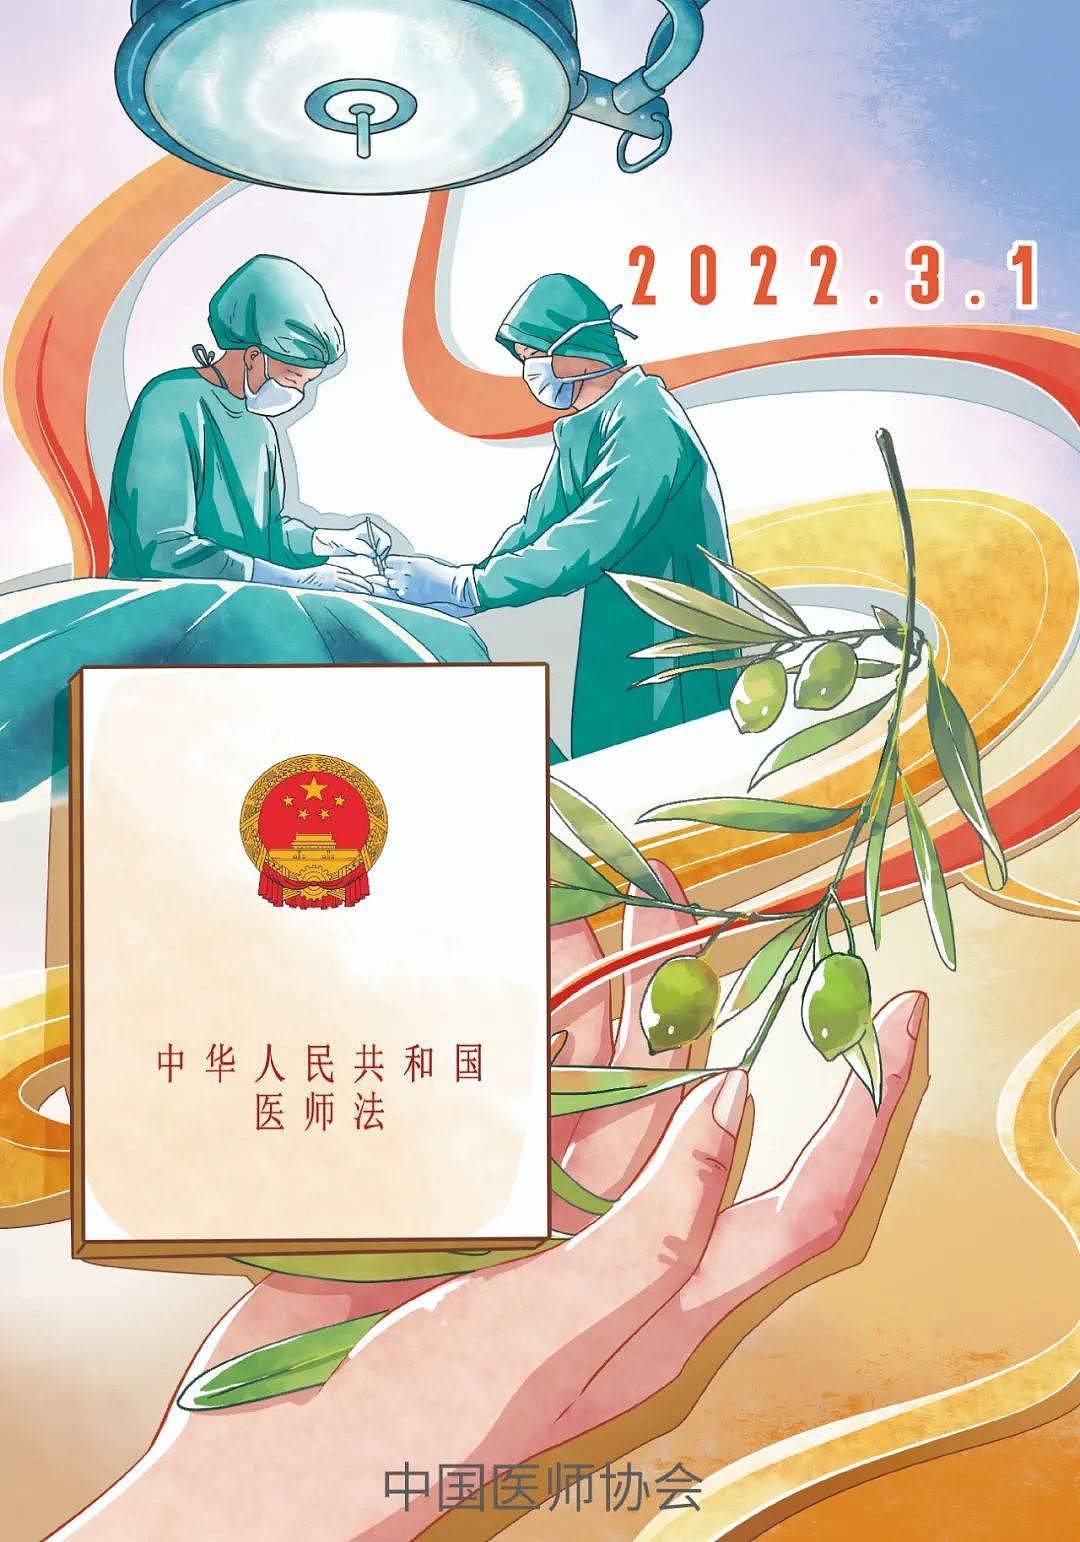 搜狐医药 | 中国医师协会发布《中华人民共和国医师法》宣传画 - 1